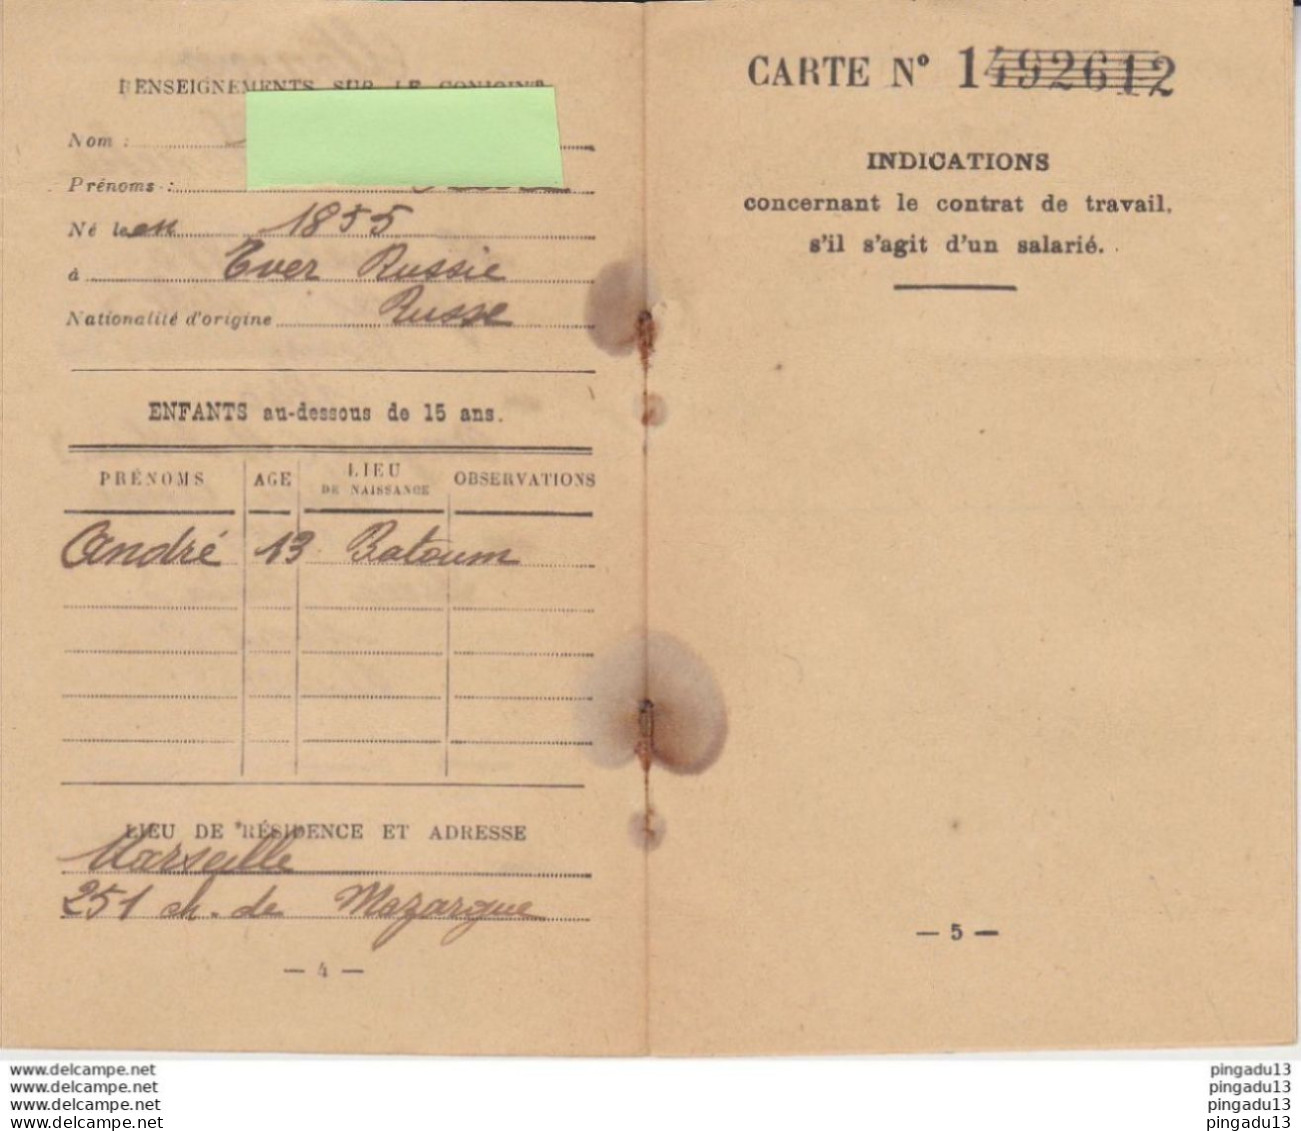 Fixe Timbre Fiscal Carte D'identité étrangers Russe Russie Tver Batoum Bouches Du Rhône 20 Janv 1926 Taxe Pleine - Covers & Documents